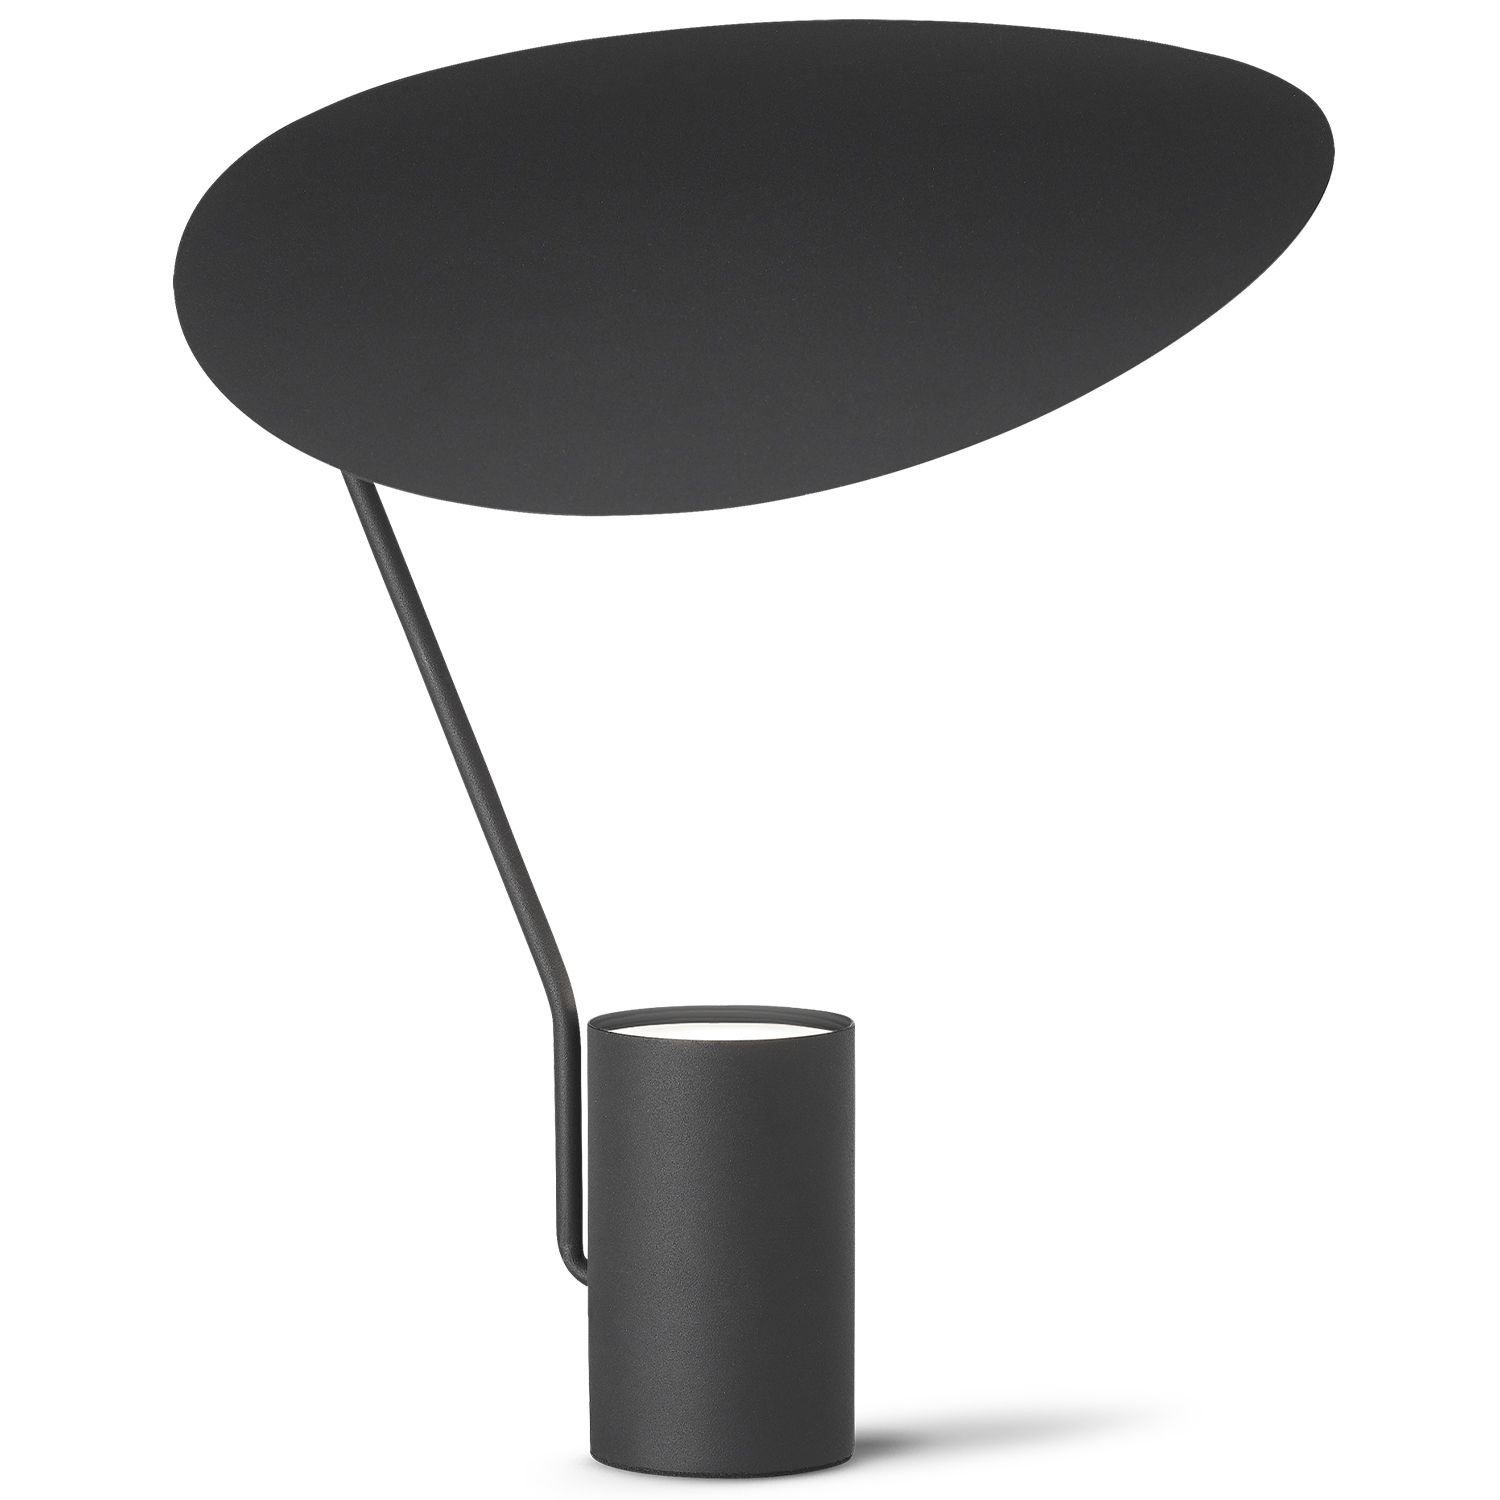 Northern designové stolní lampy Ombre - DESIGNPROPAGANDA